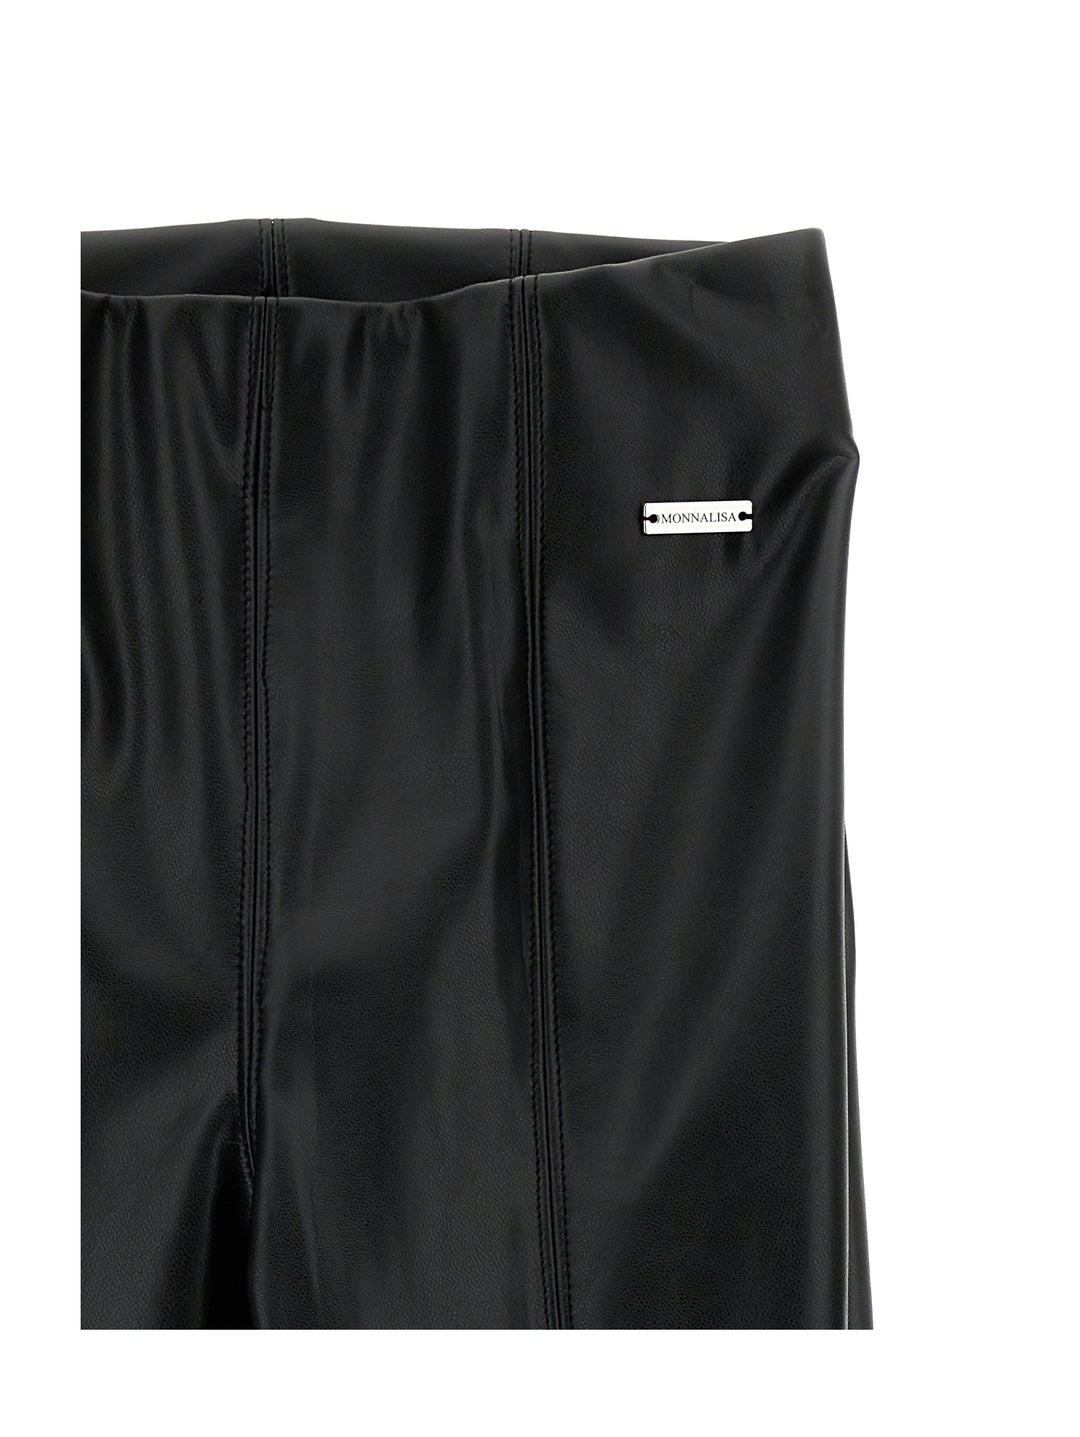 Pantalon fille noir en coton avec patch logo